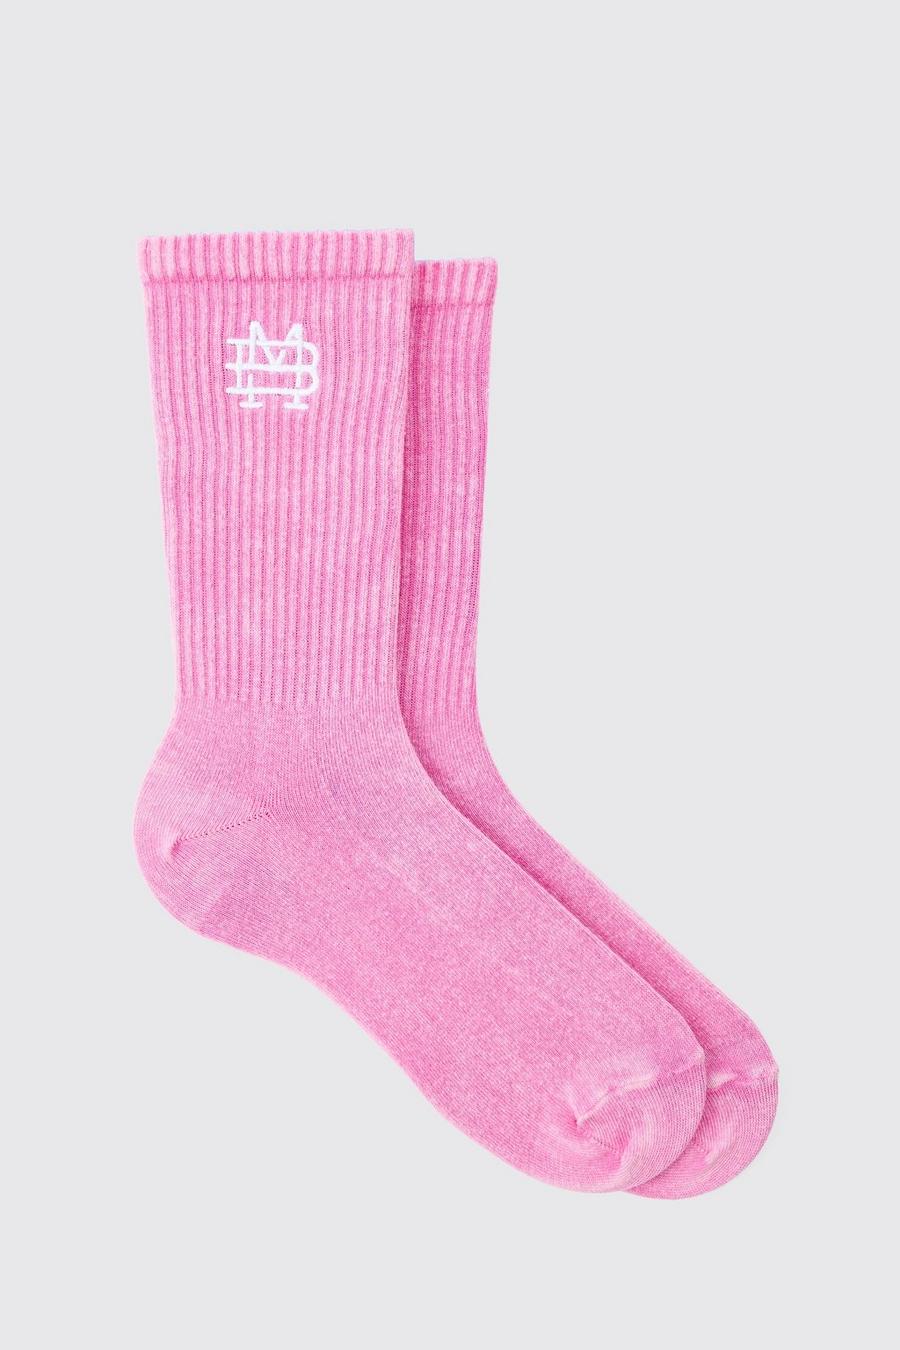 Acid Wash BM Embroidered Socks In Pink